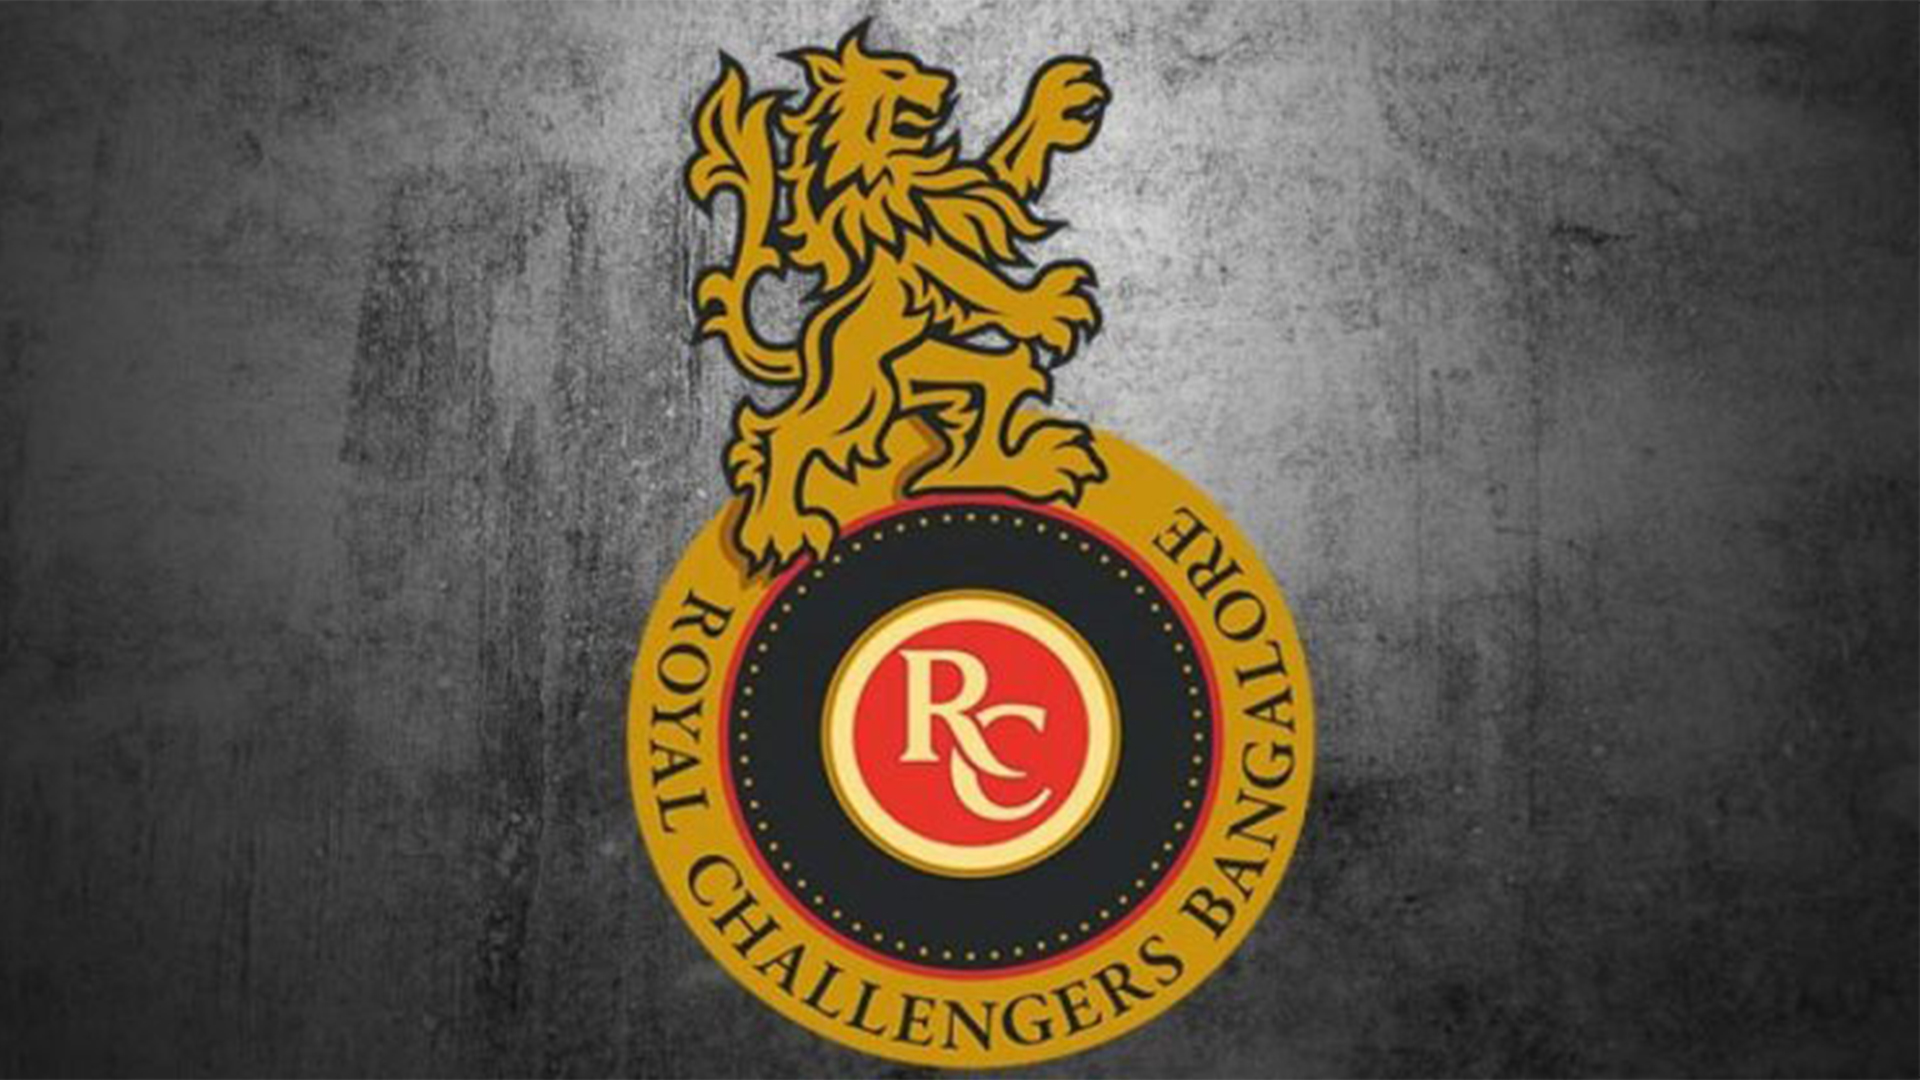 rcb logo image 2019